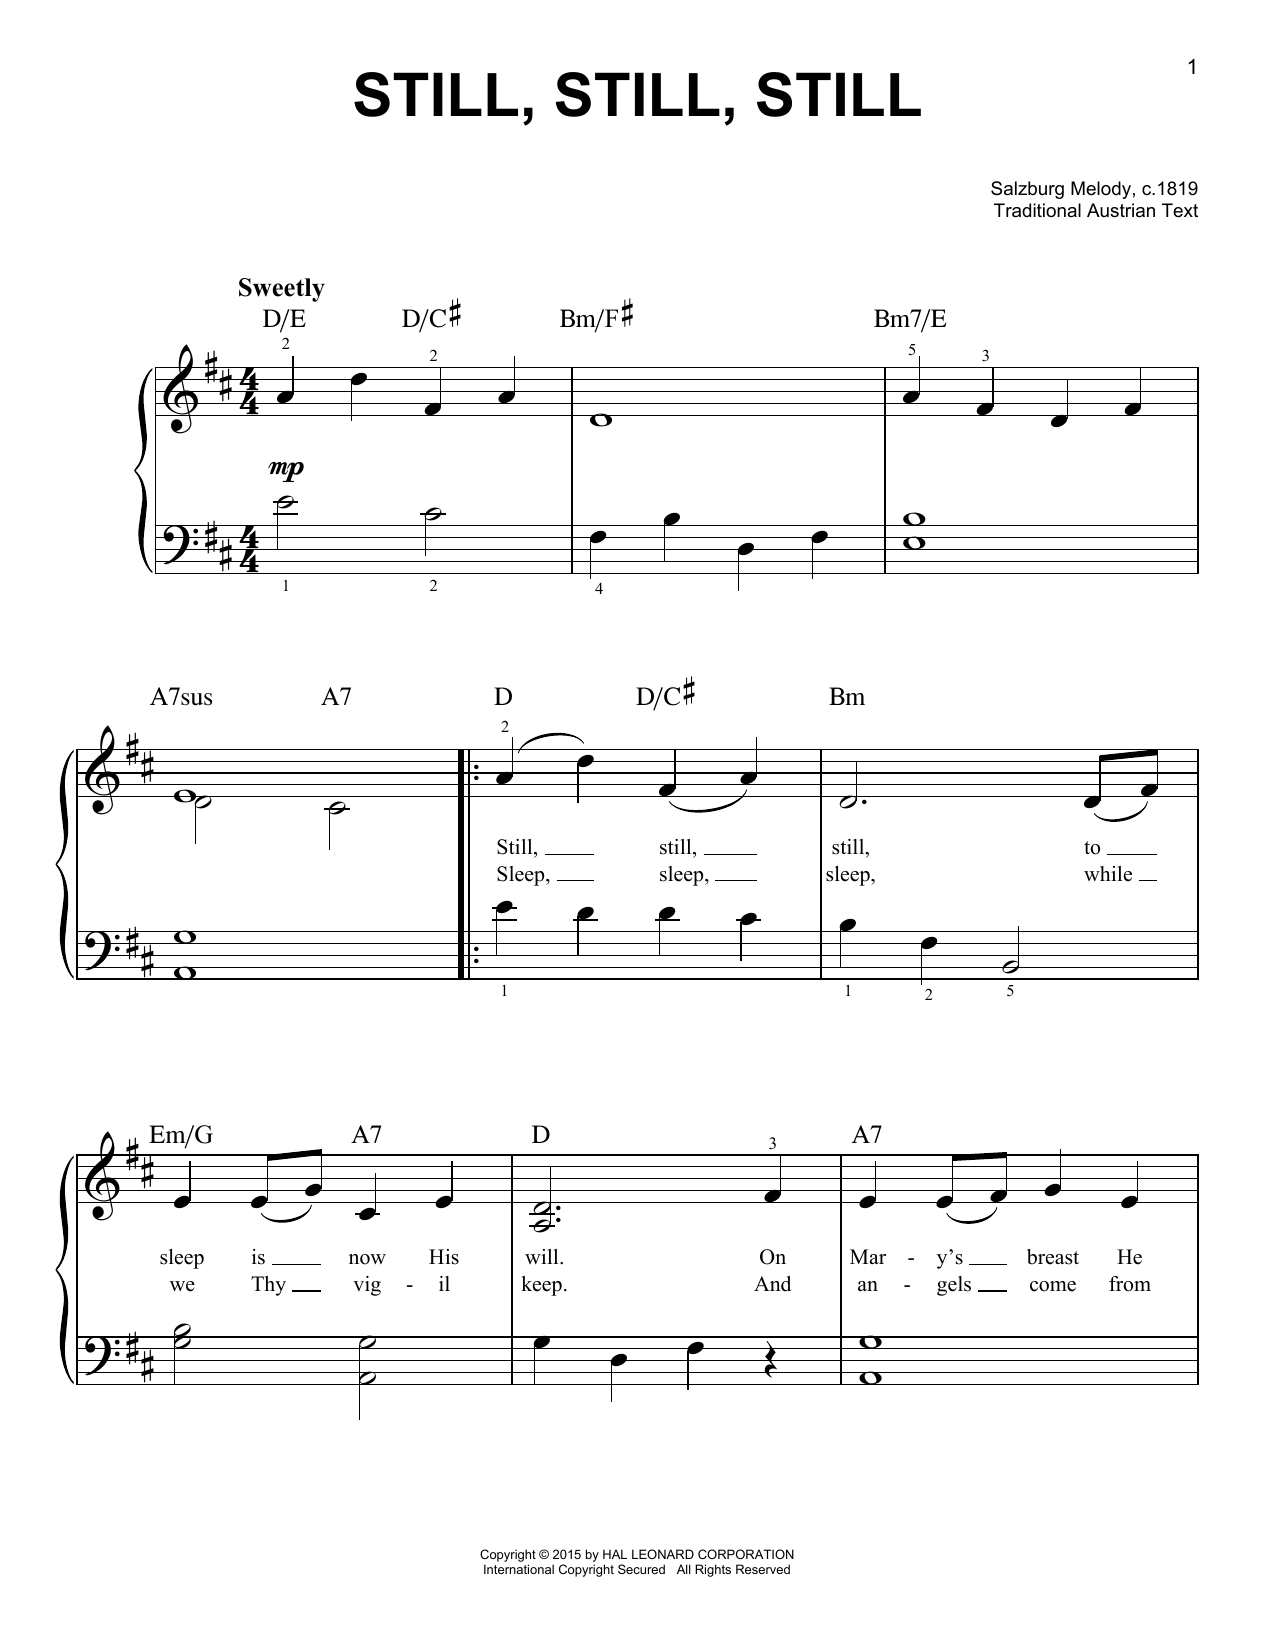 Salzburg Melody, c.1819 Still, Still, Still Sheet Music Notes & Chords for Alto Saxophone Duet - Download or Print PDF